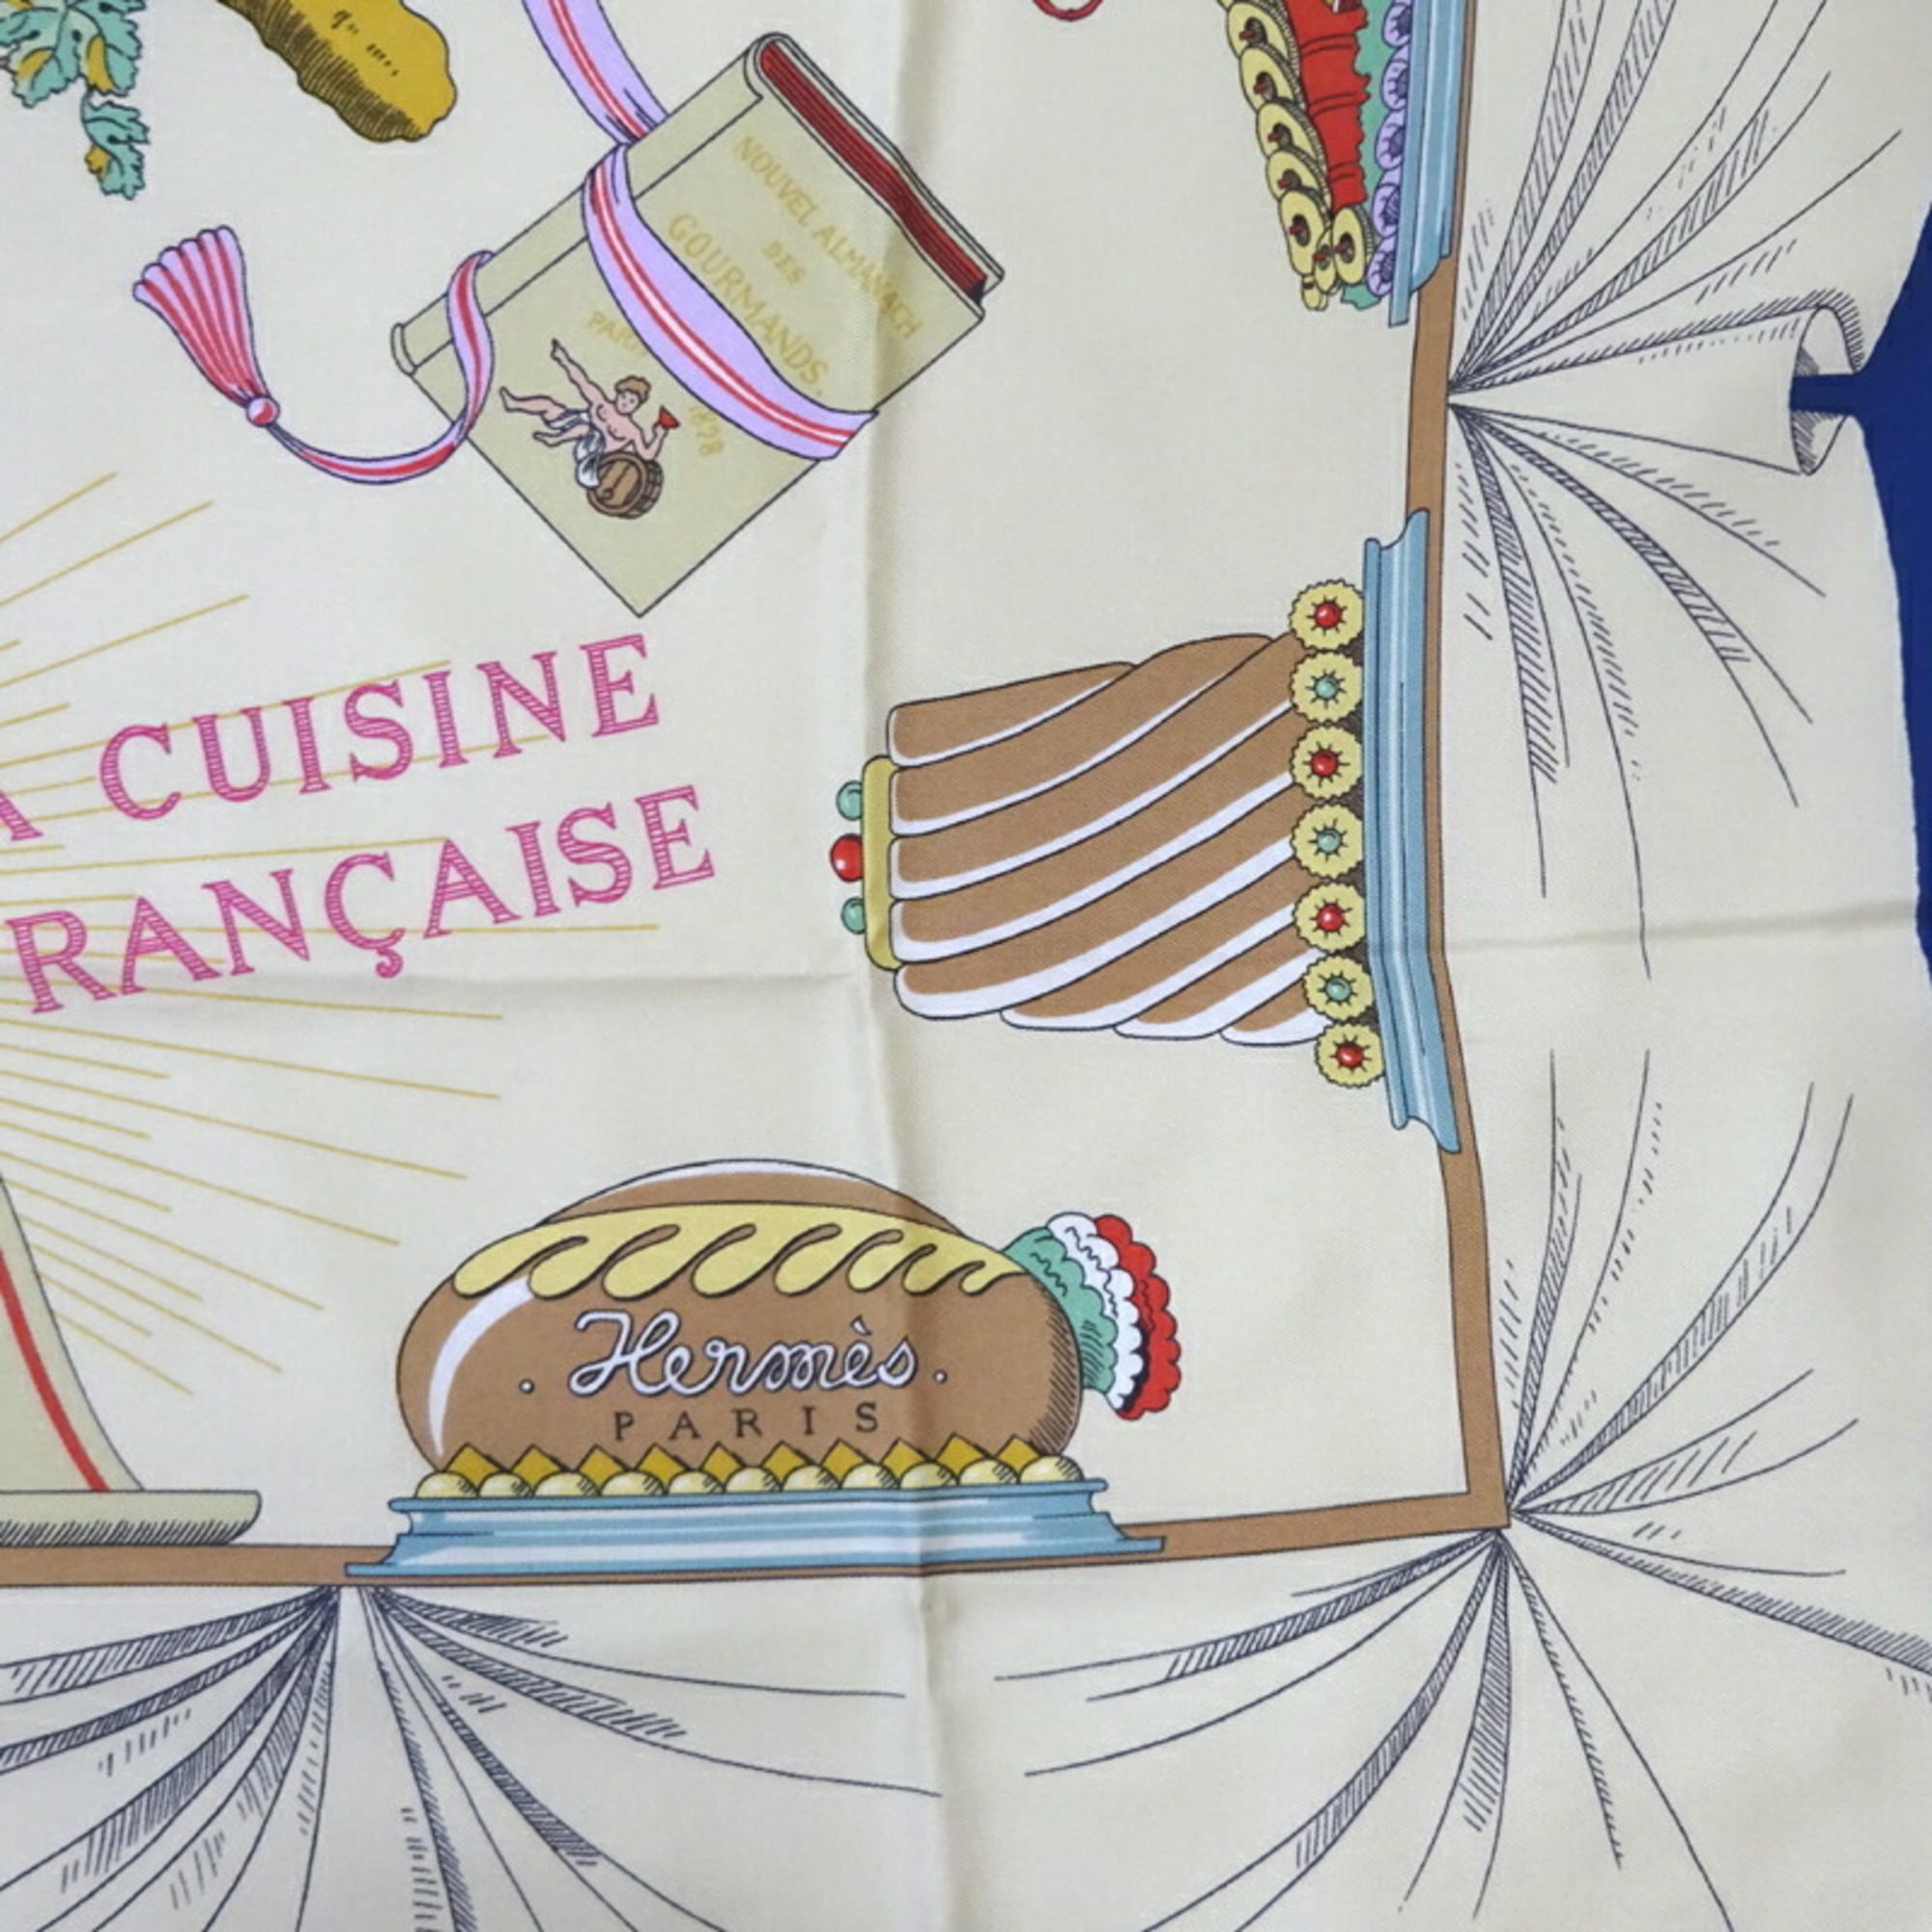 Hermes Carré 90 A LA GLOIRE DE CUISINE FRANCAISE Celebrating French cuisine Women's scarf muffler 100% silk beige